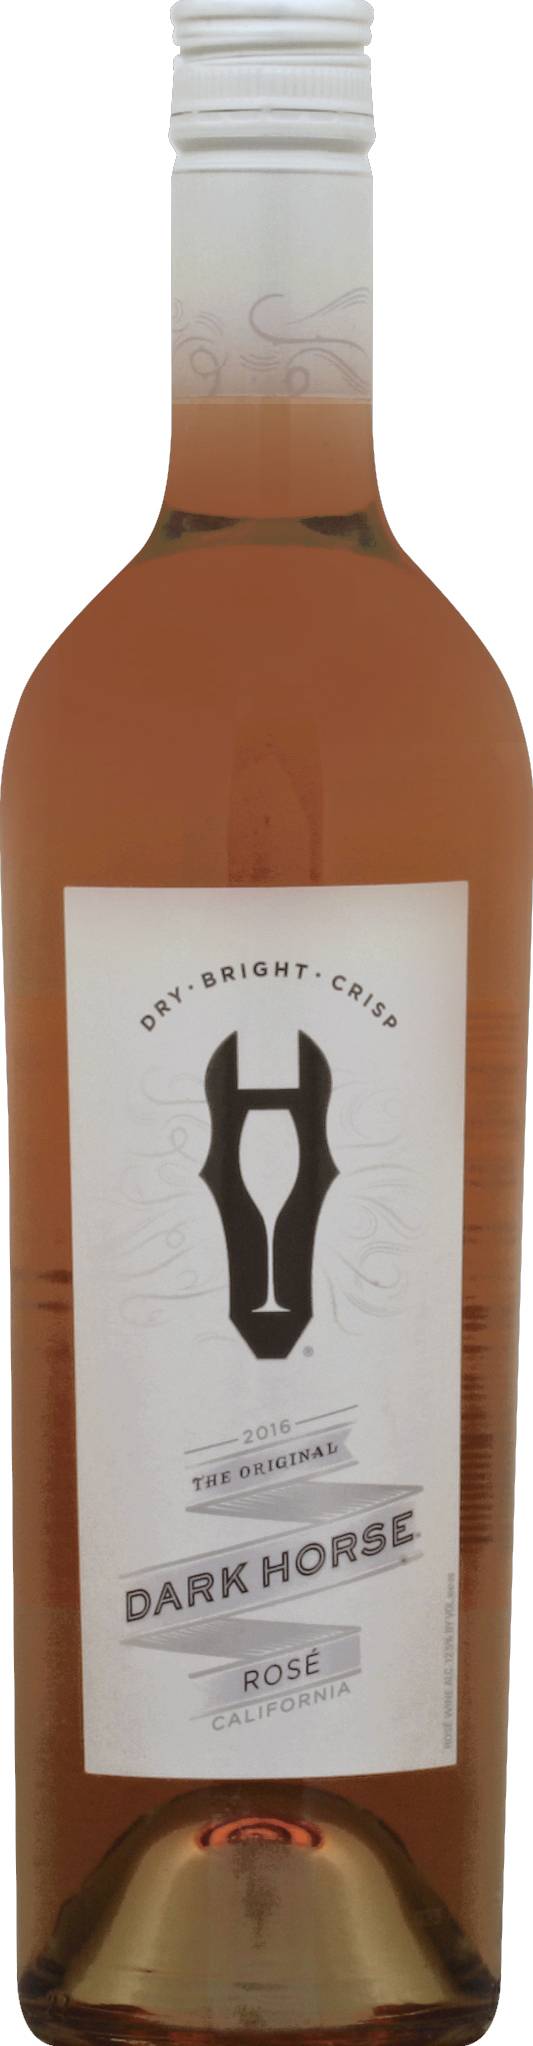 Dark Horse the Original Rose Wine 2016 (750 ml)